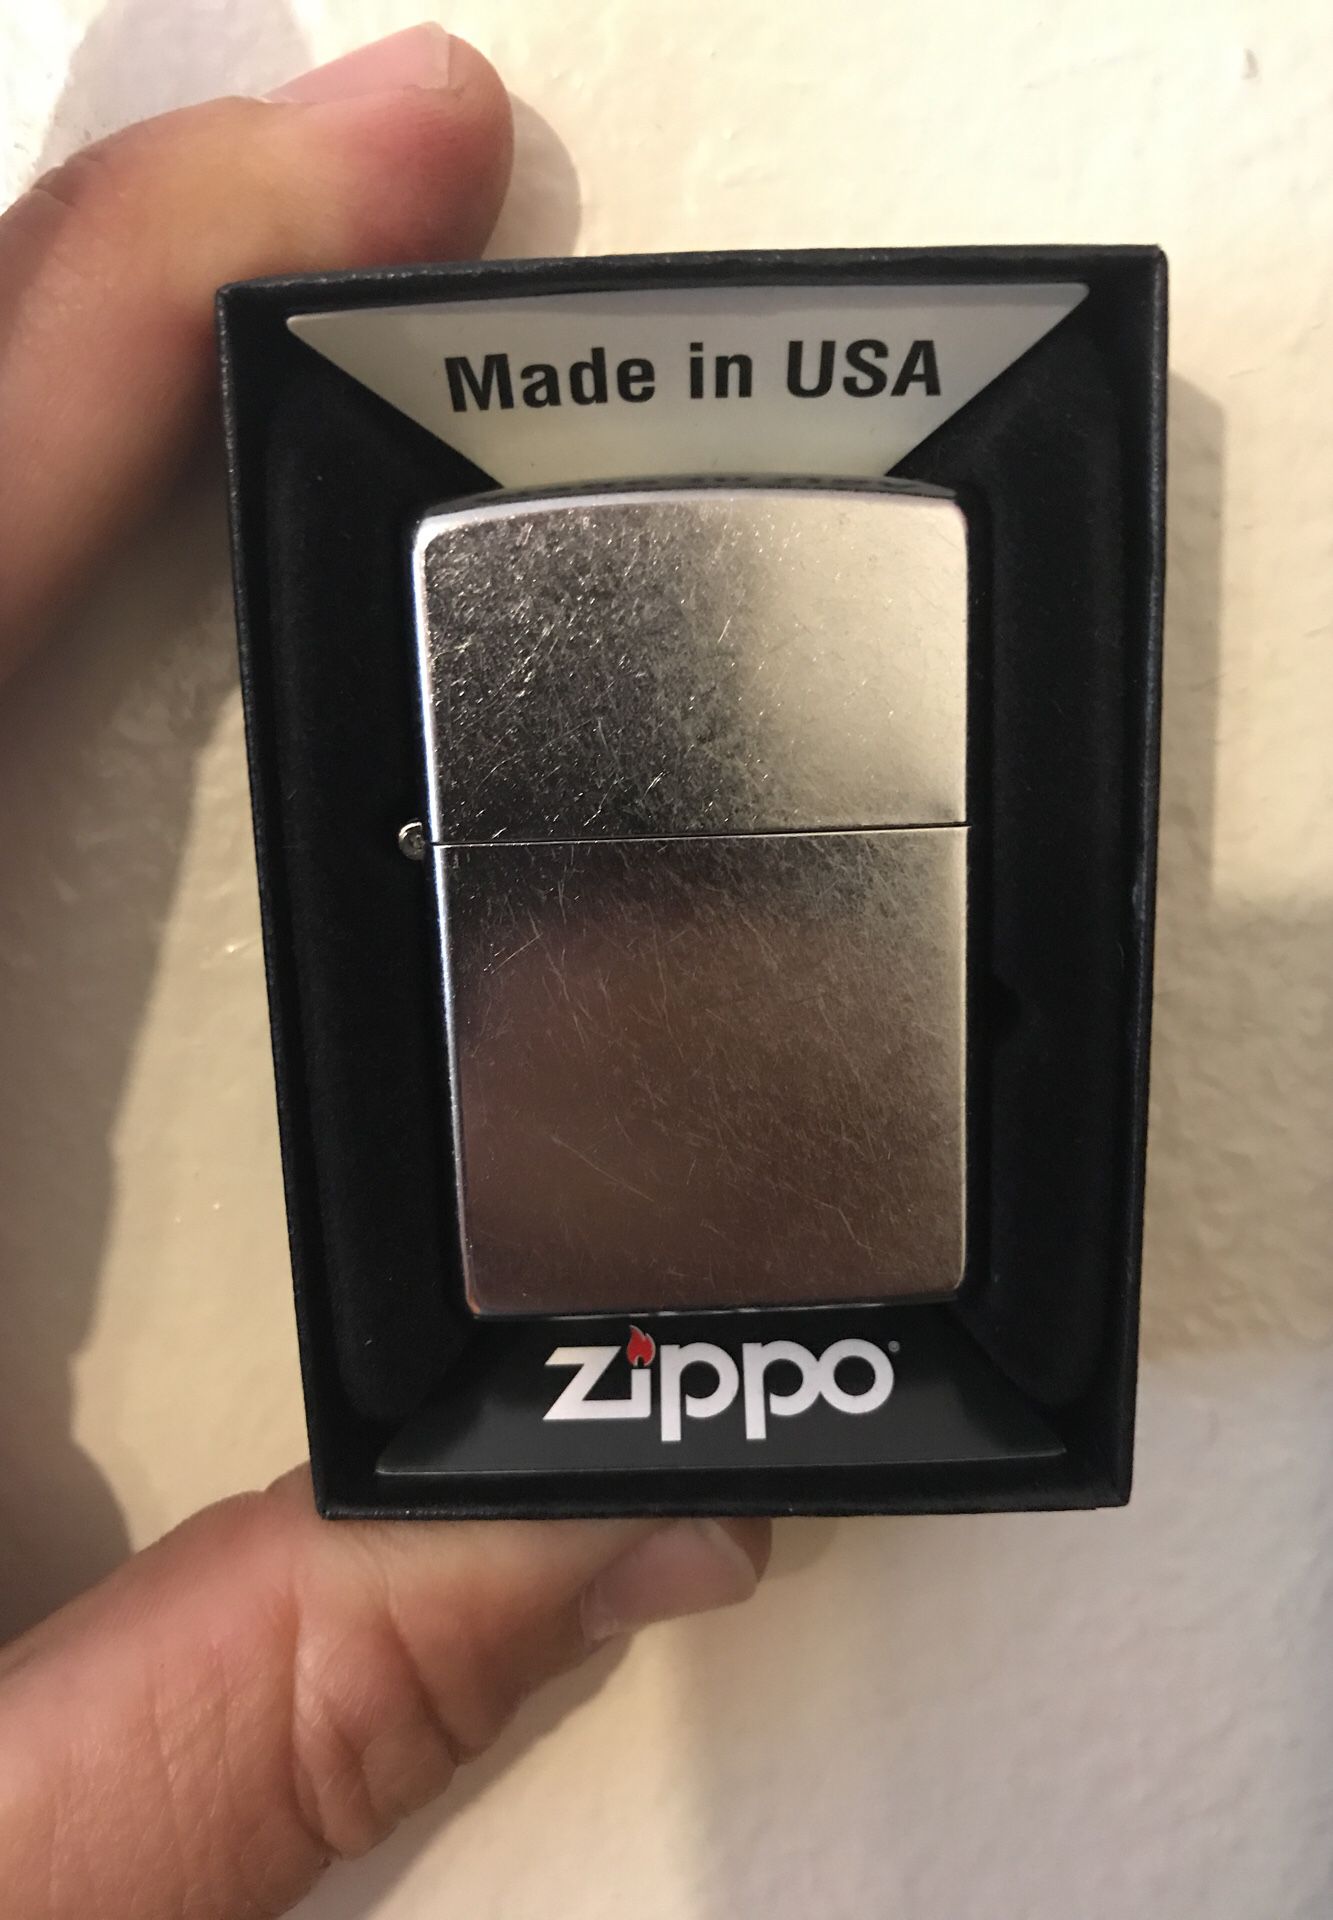 Zippo lighter’s